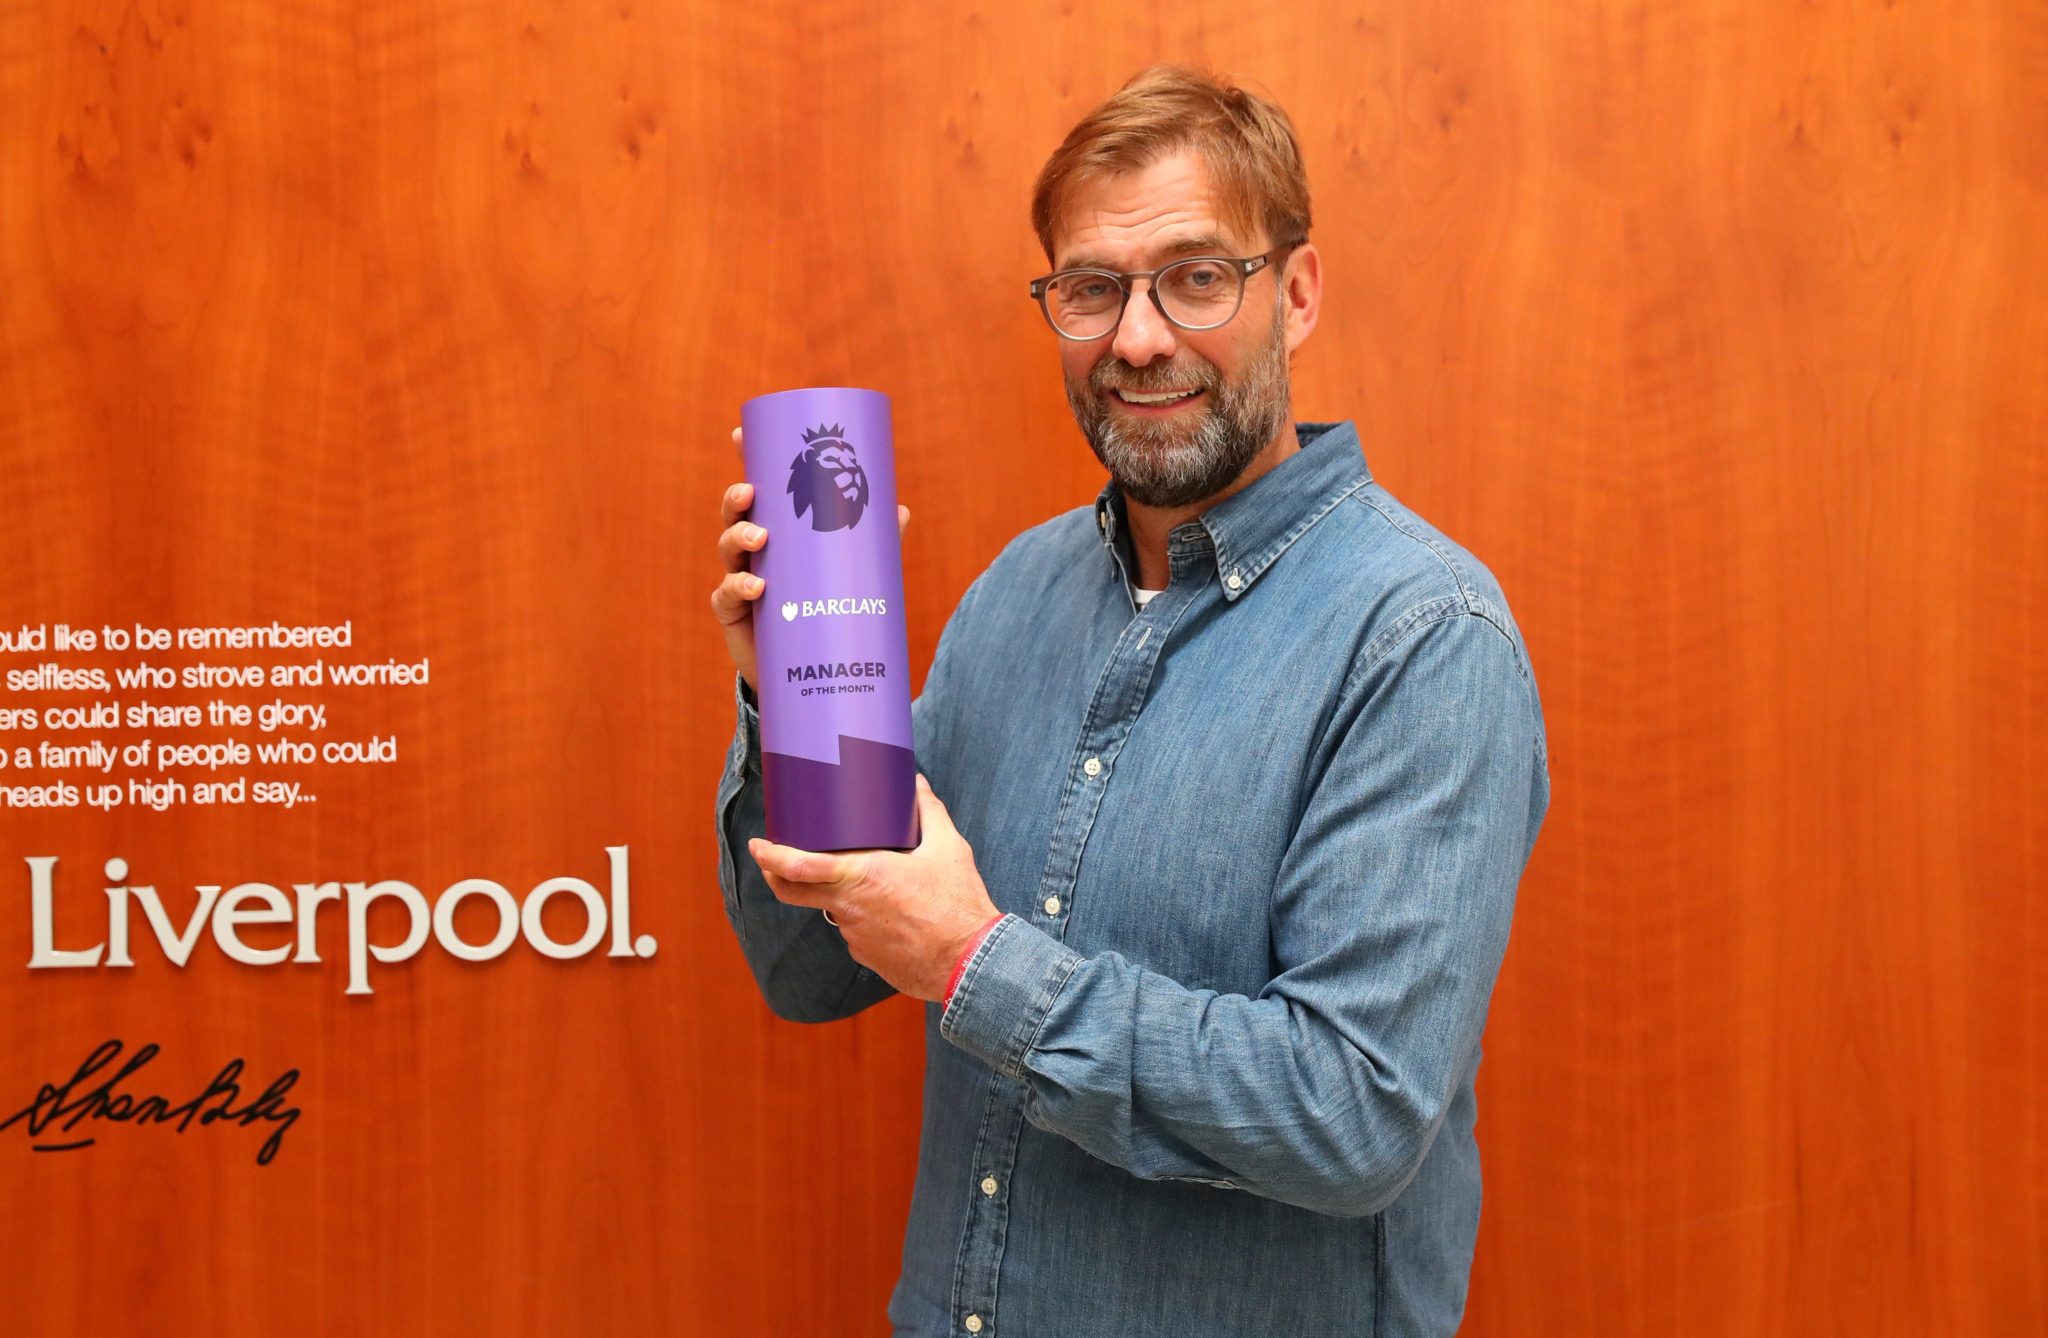 Descarta Jürgen Kloop que le interesen los récords con Liverpool. foto: Liverpool